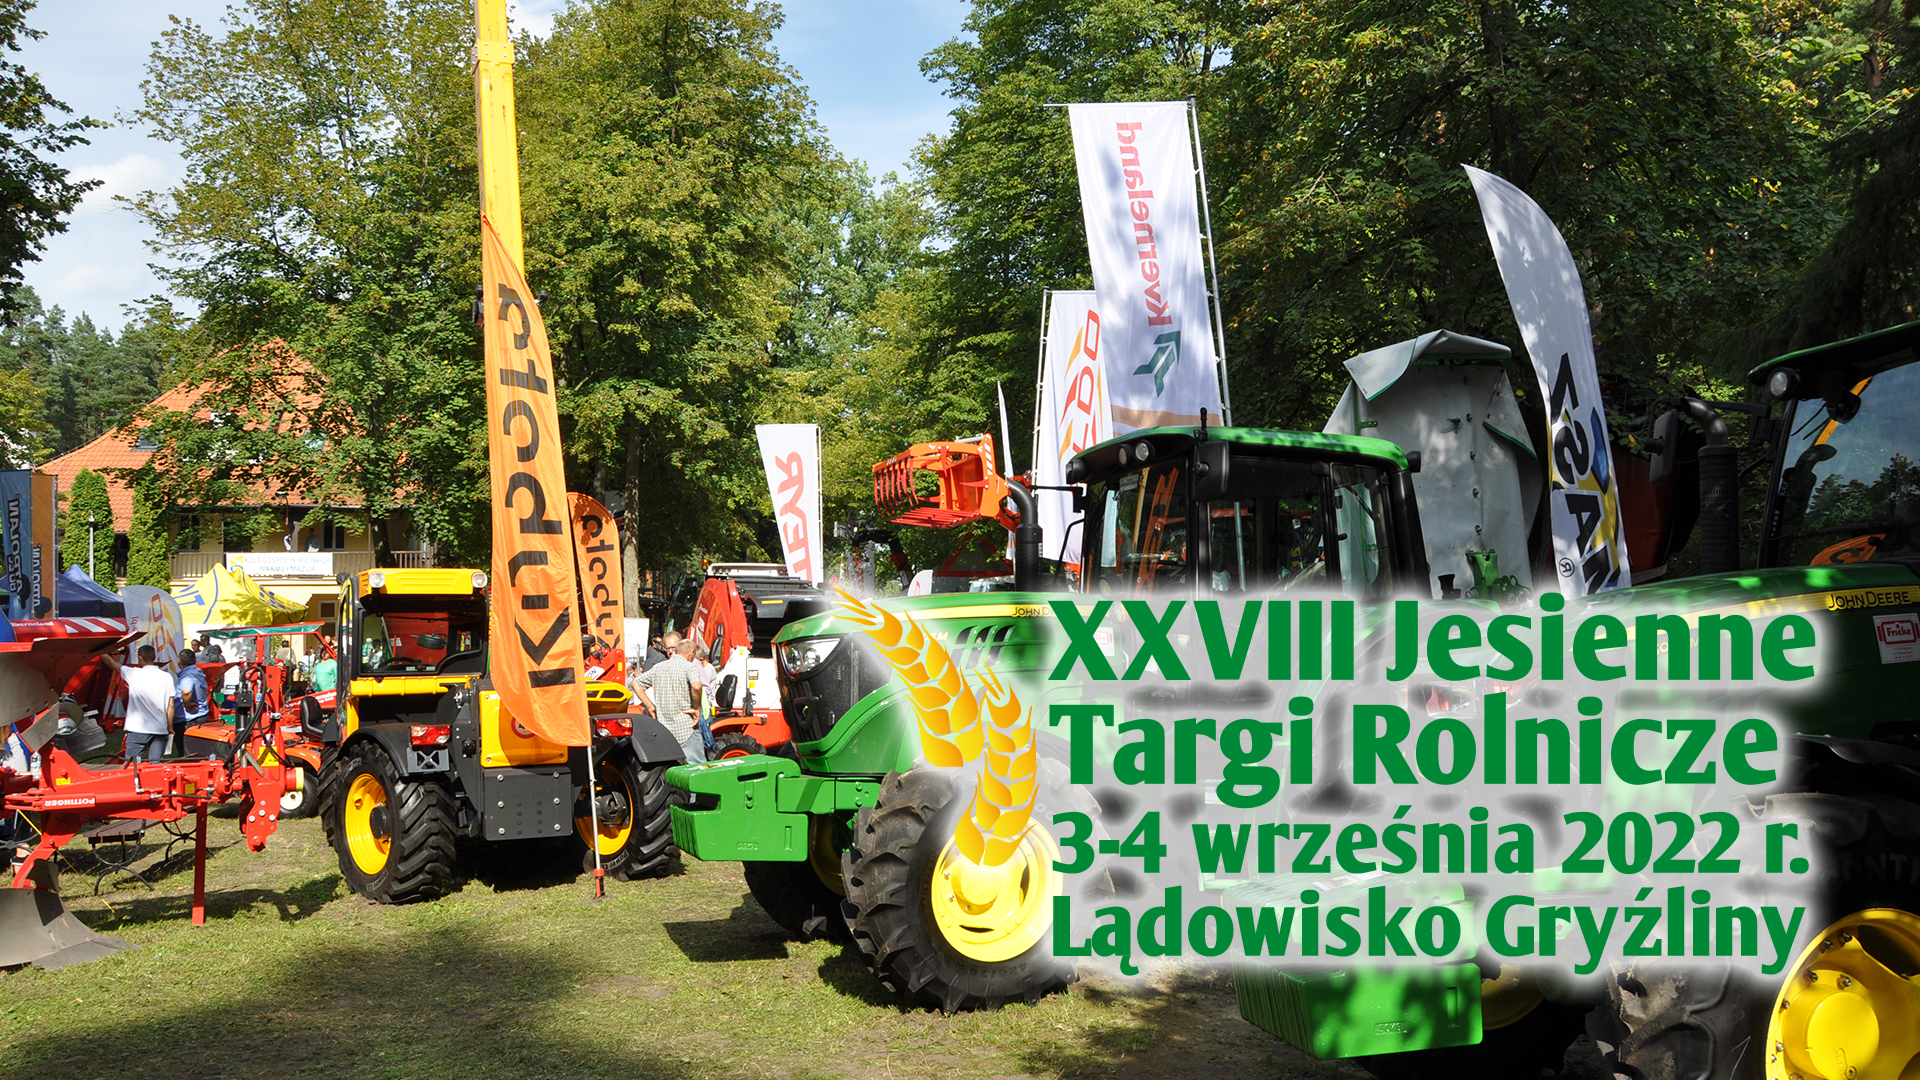 XXVIII Jesienne Targi Rolnicze "Wszystko dla rolnictwa", 3-4 września 2022 r., Lądowisko Gryźliny